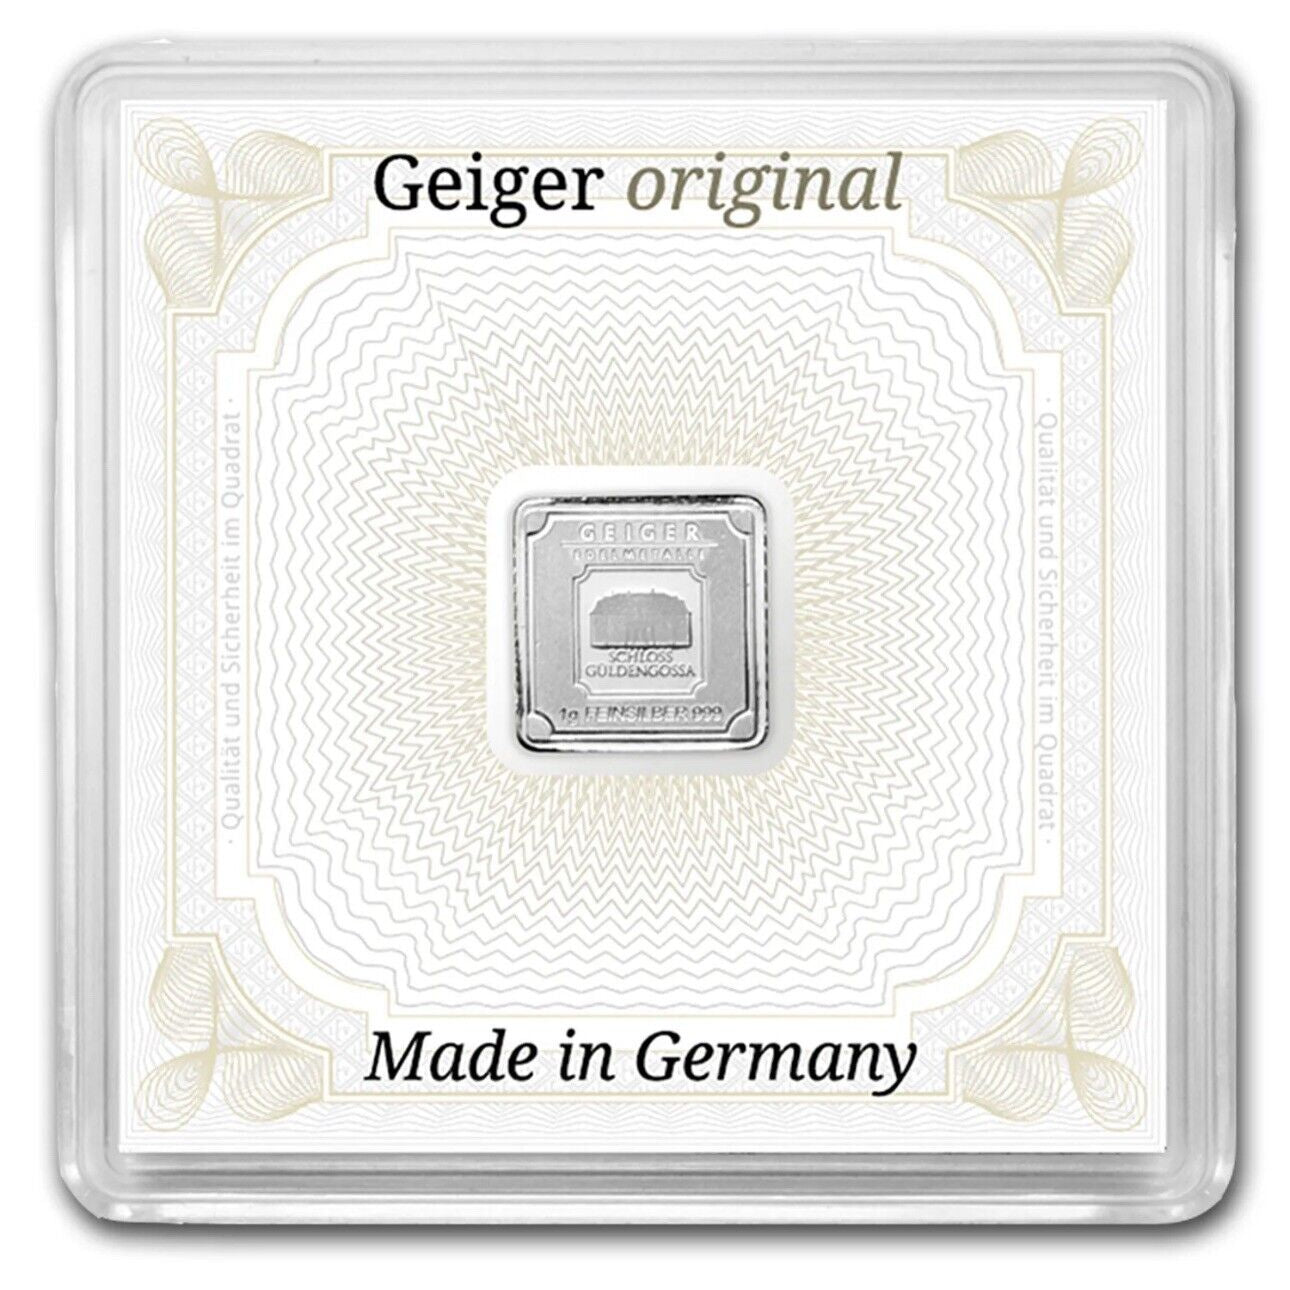 Geiger Original Schloss Guldengossa 1 gm Silver Square Minted Bar in Capsule